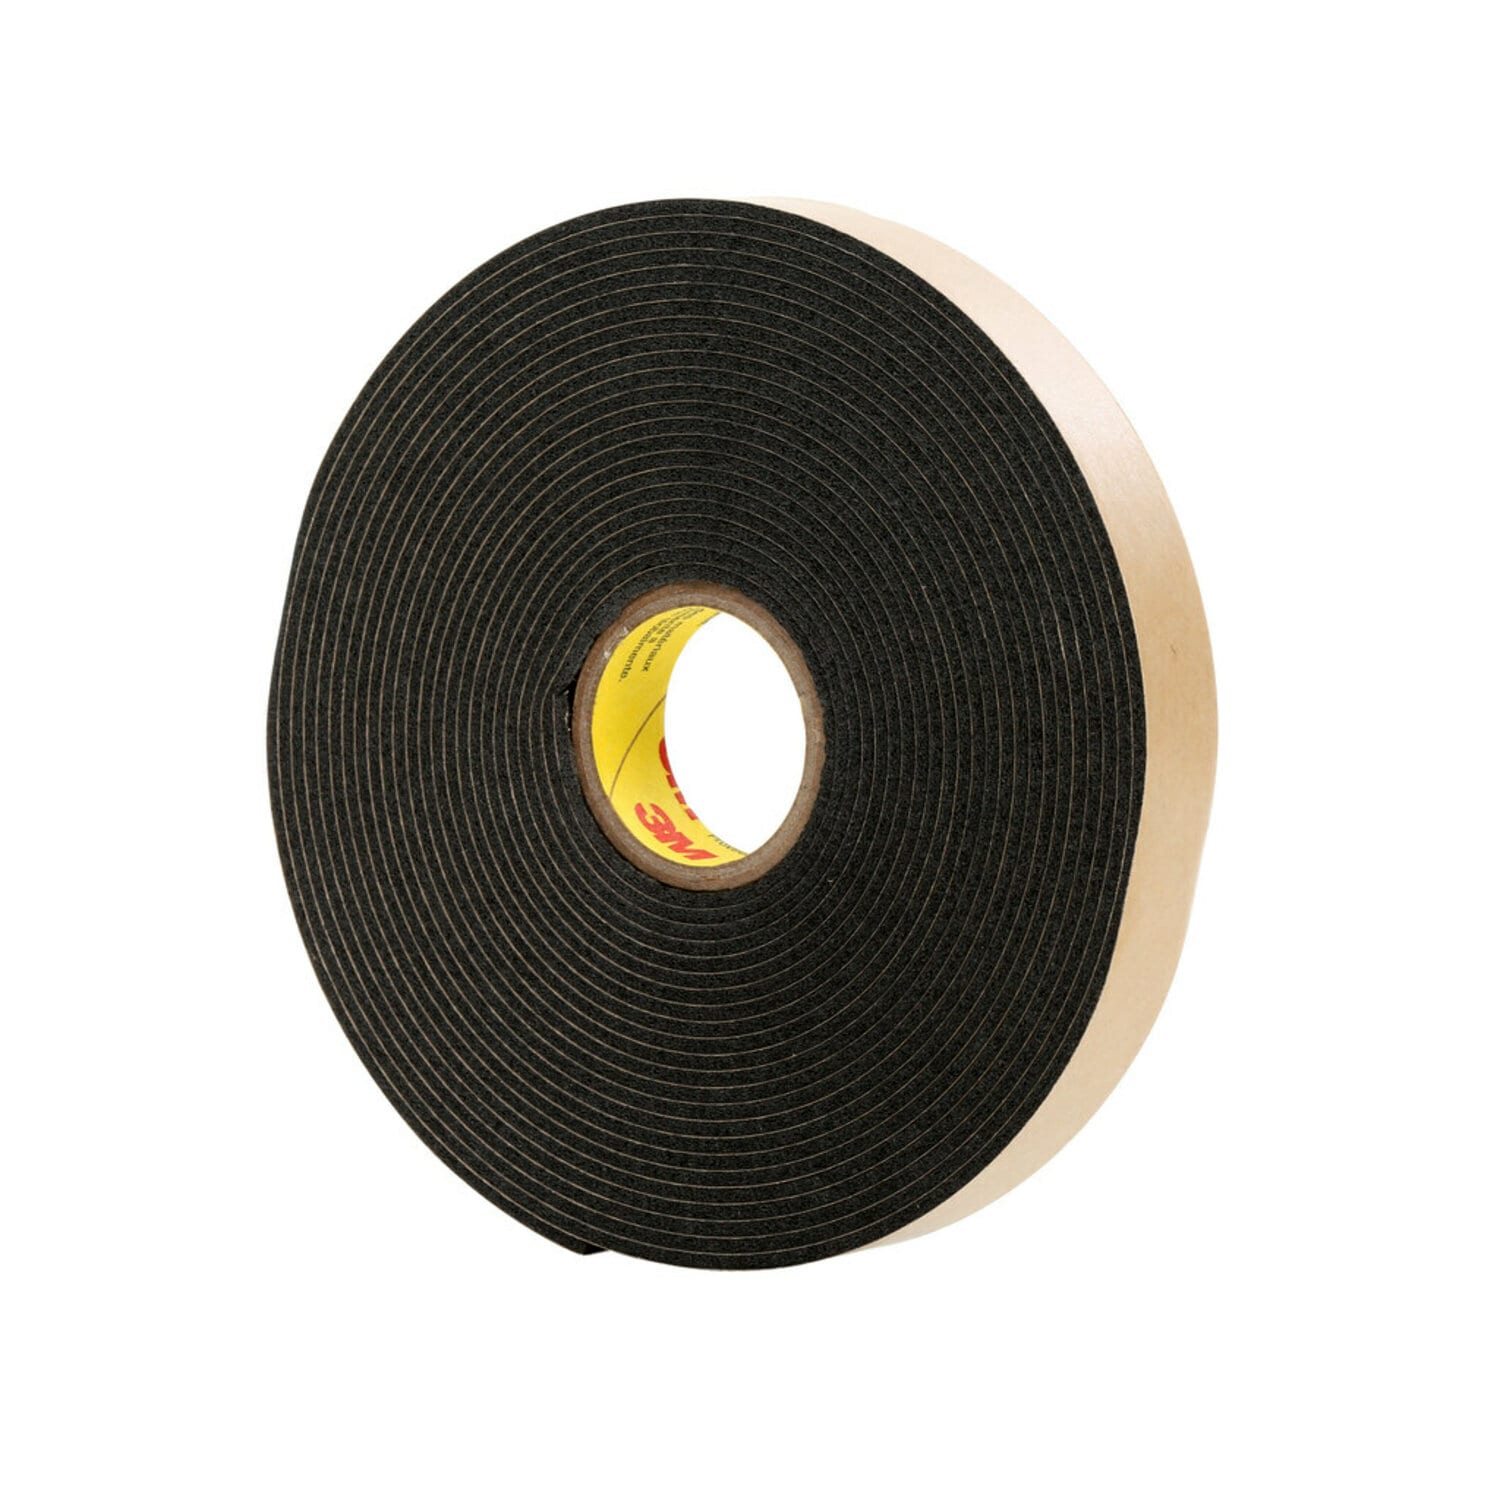 7000124260 - 3M Double Coated Polyethylene Foam Tape 4496B, Black, 1/4 in x 36 yd,
62 mil, 36 rolls per case